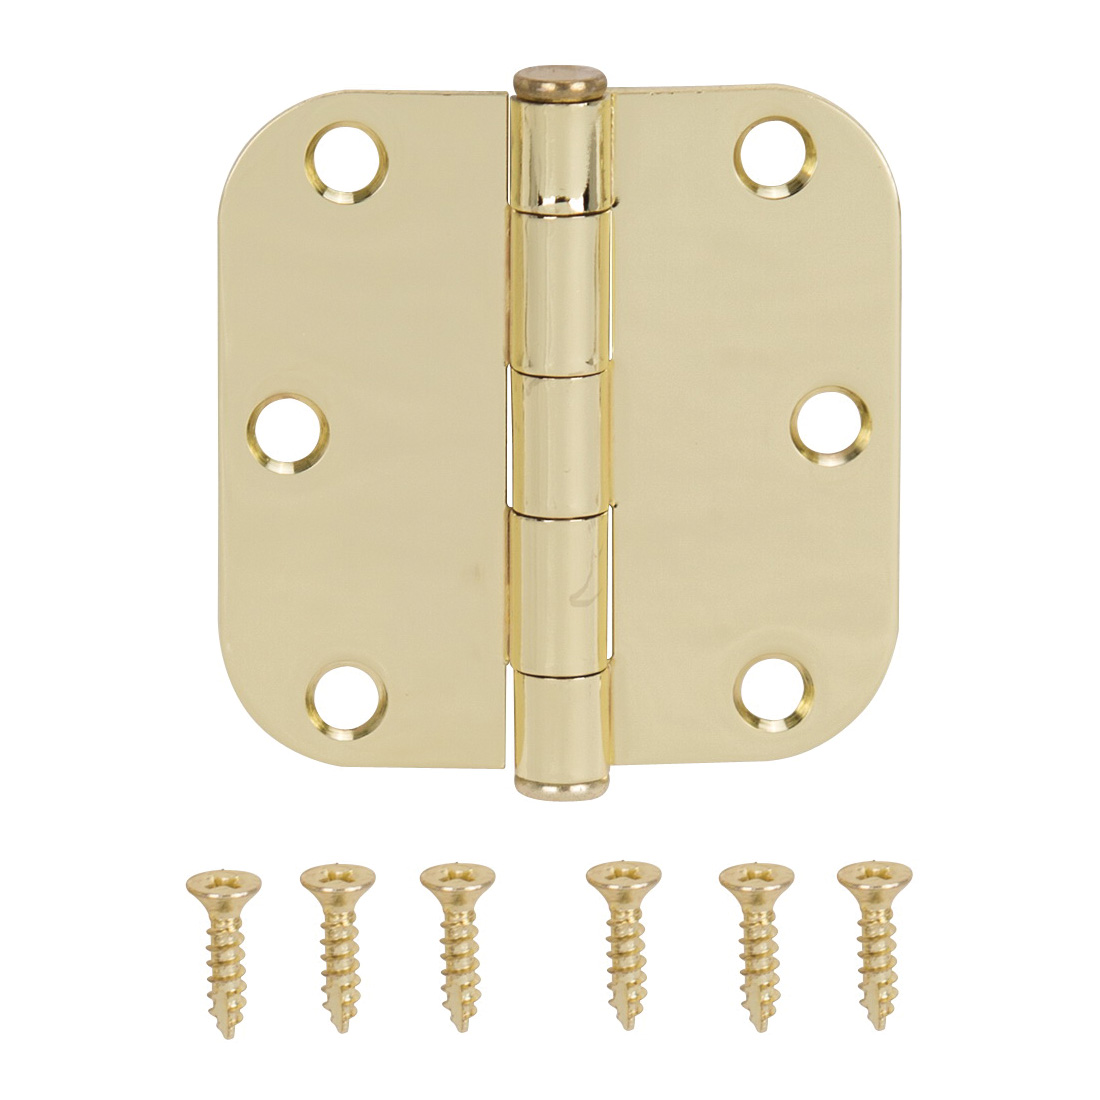 LR-701-PS Door Hinge, Steel, Polished Brass, Loose Pin, 180 deg Range of Motion, Screw Mounting